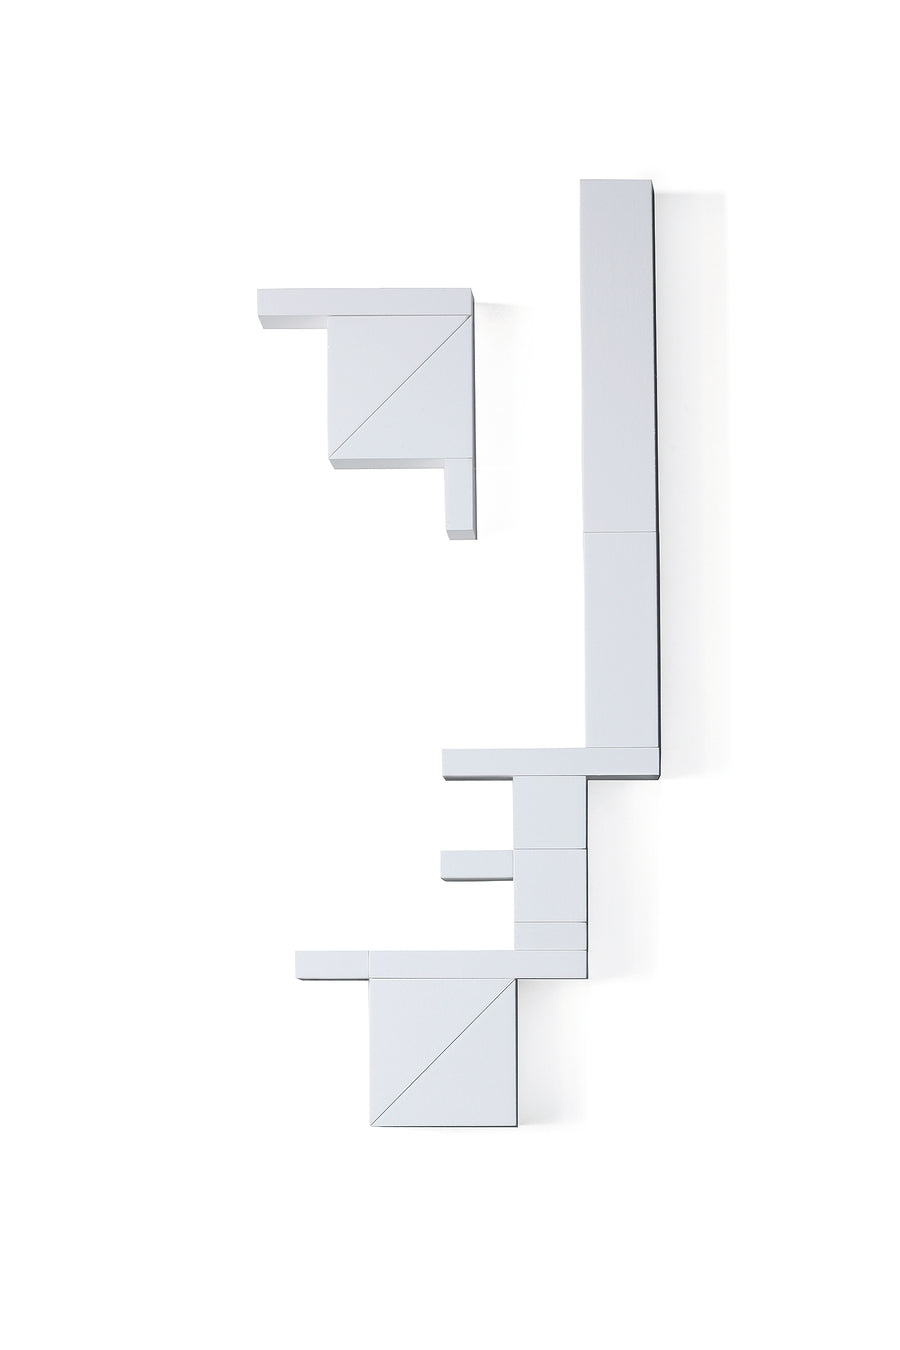 Bauhaus Bauspiel Edition white